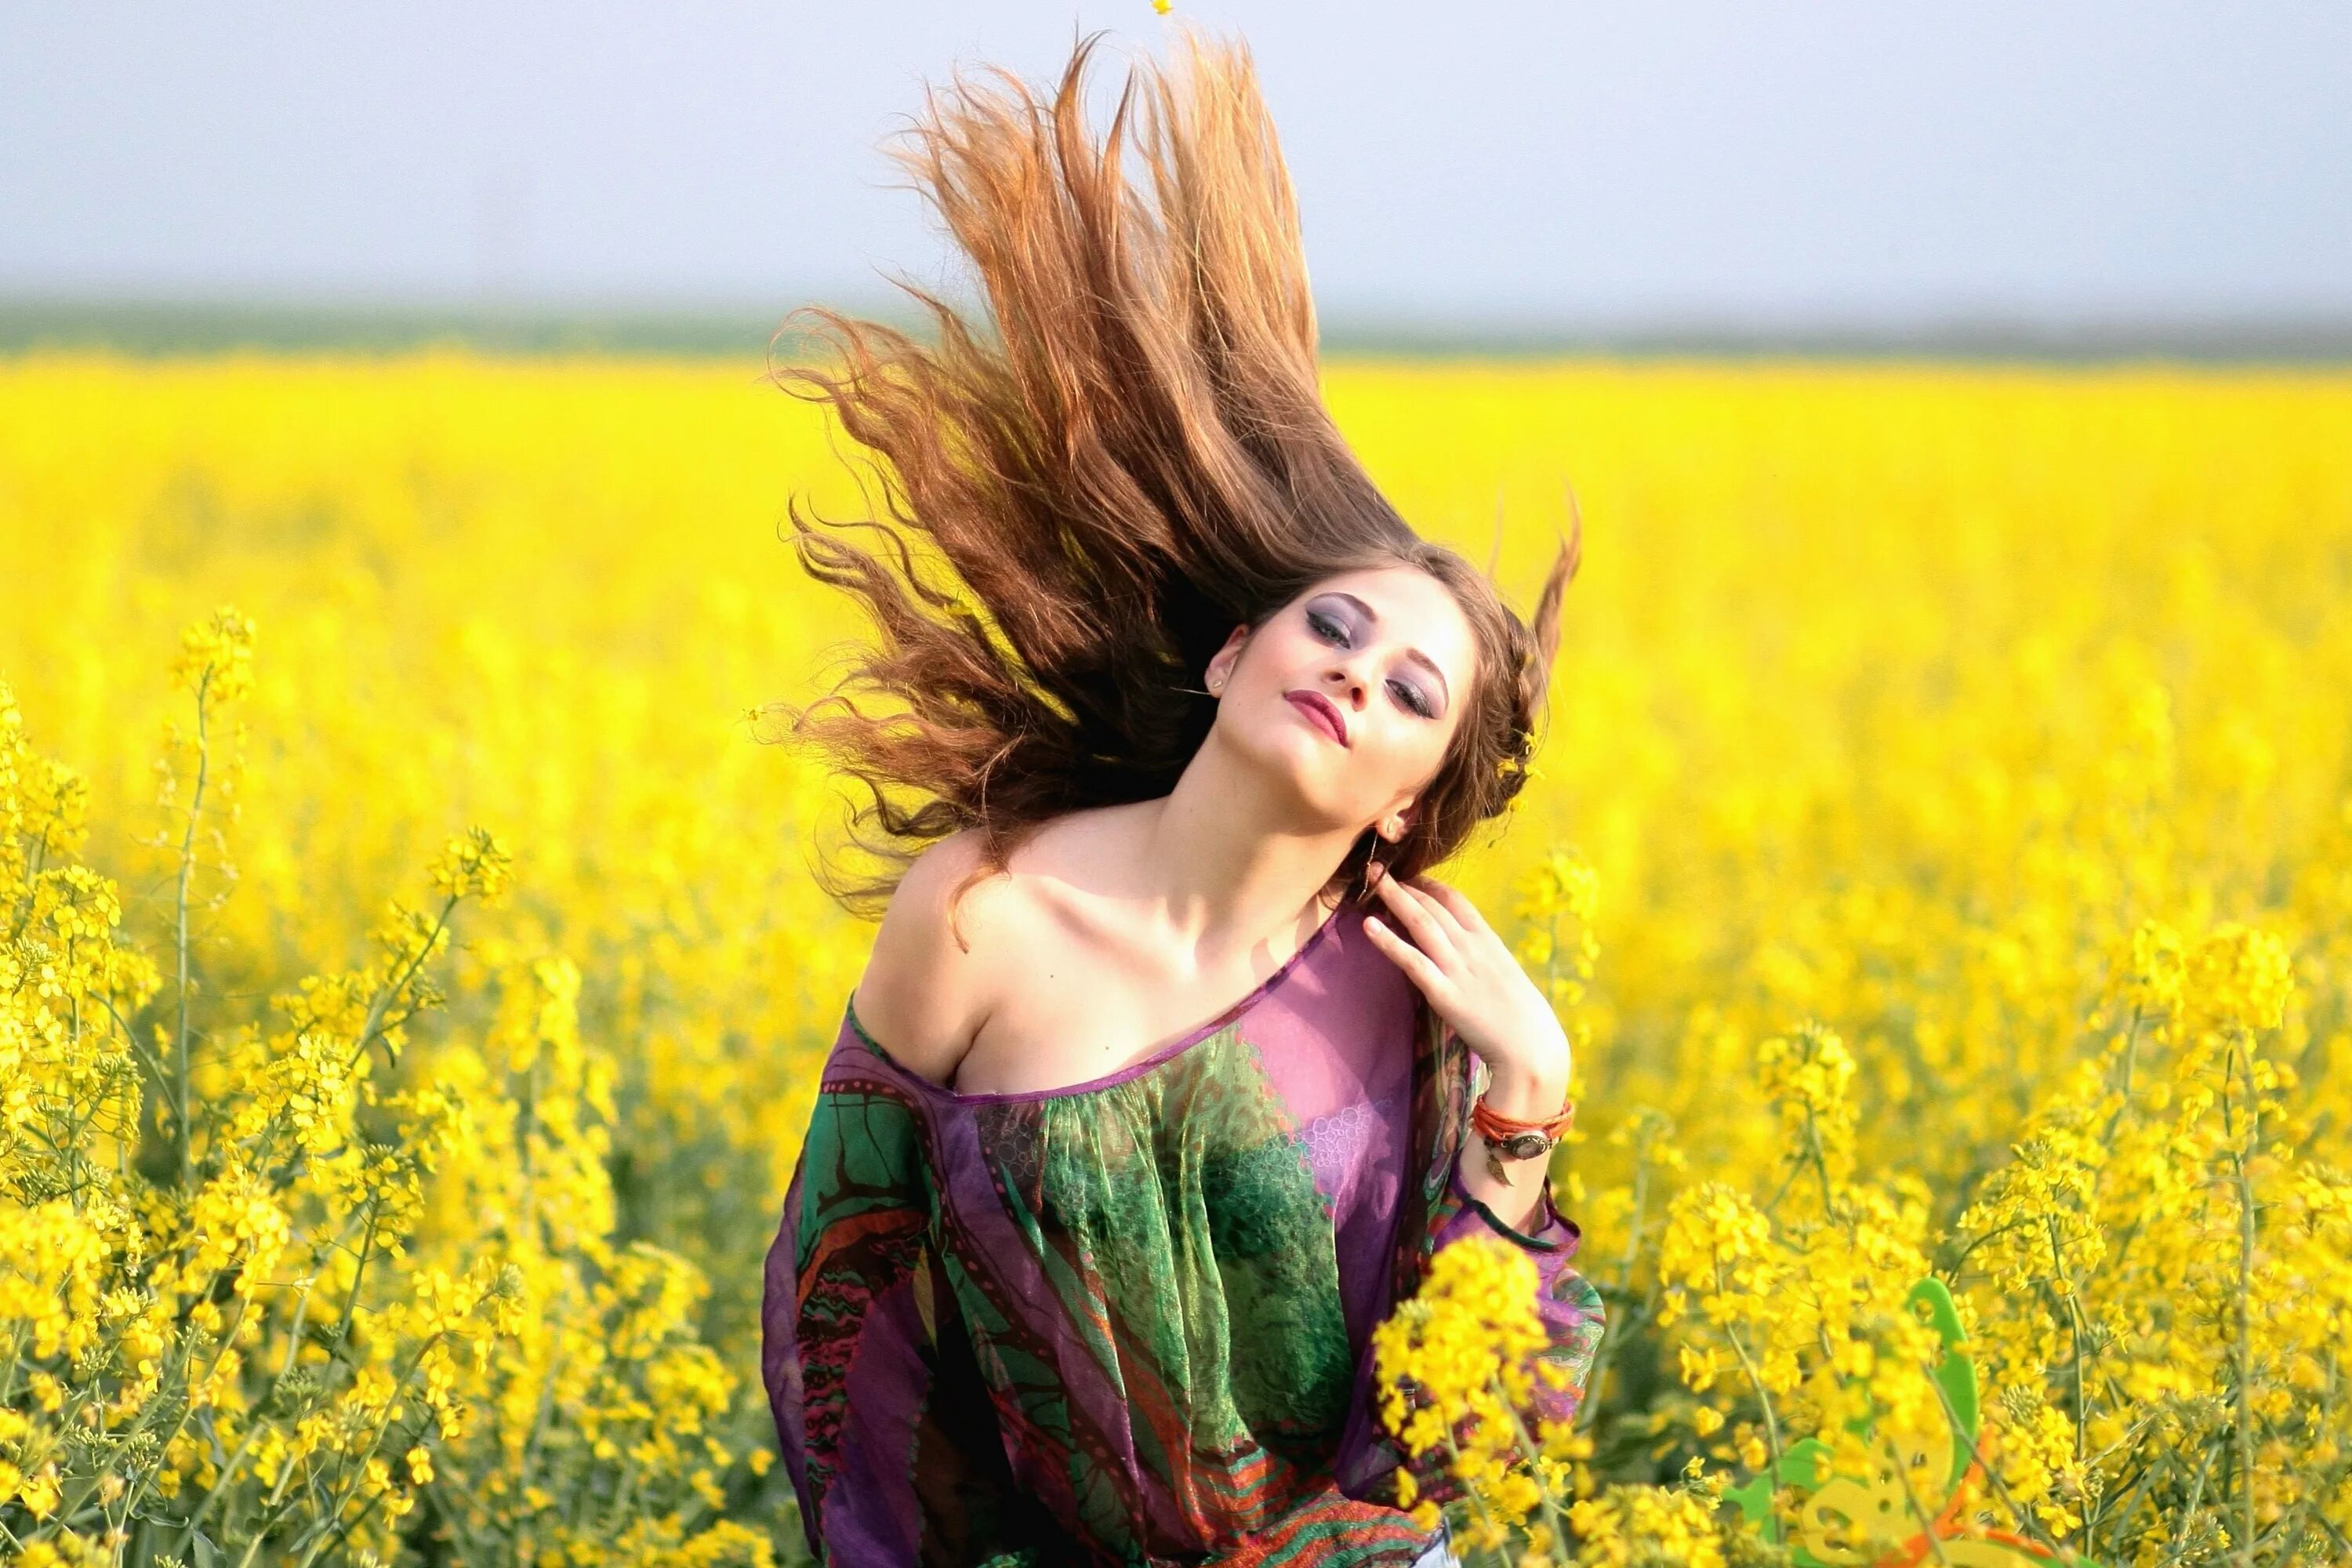 Счастье полной женщины. Девушка в цветочном поле. Девушка в поле с цветами. Фотосессия на природе. Фотосессия в желтом цвете.